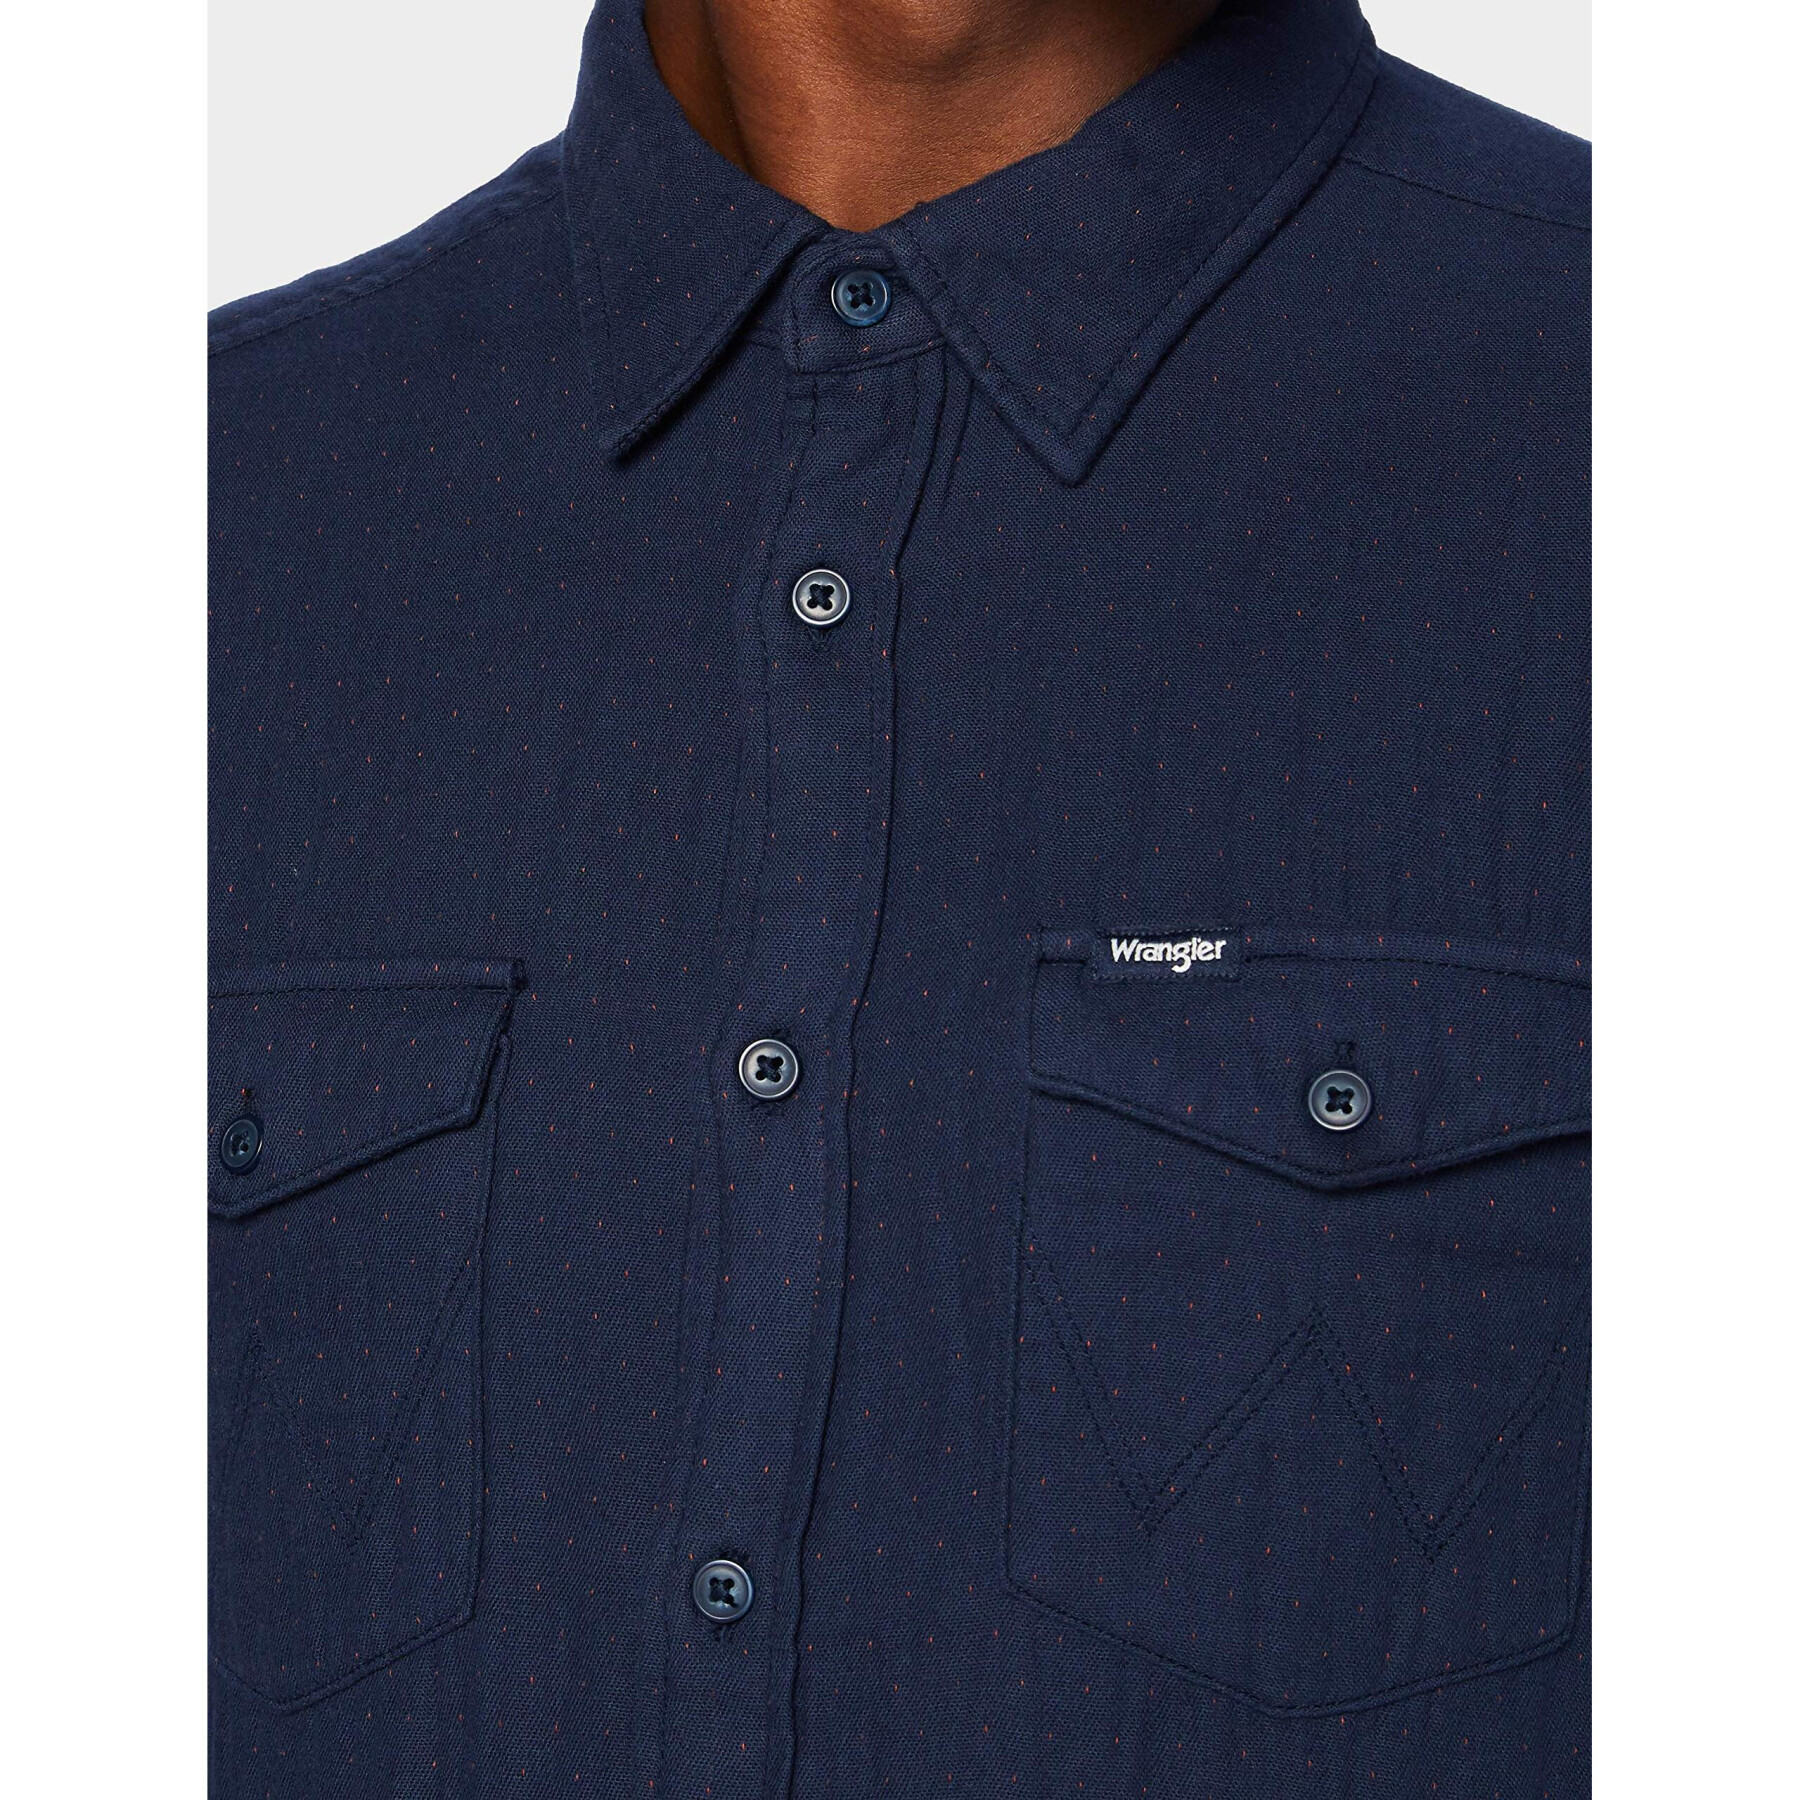 Camisa Wranger con bolsillos azul marino